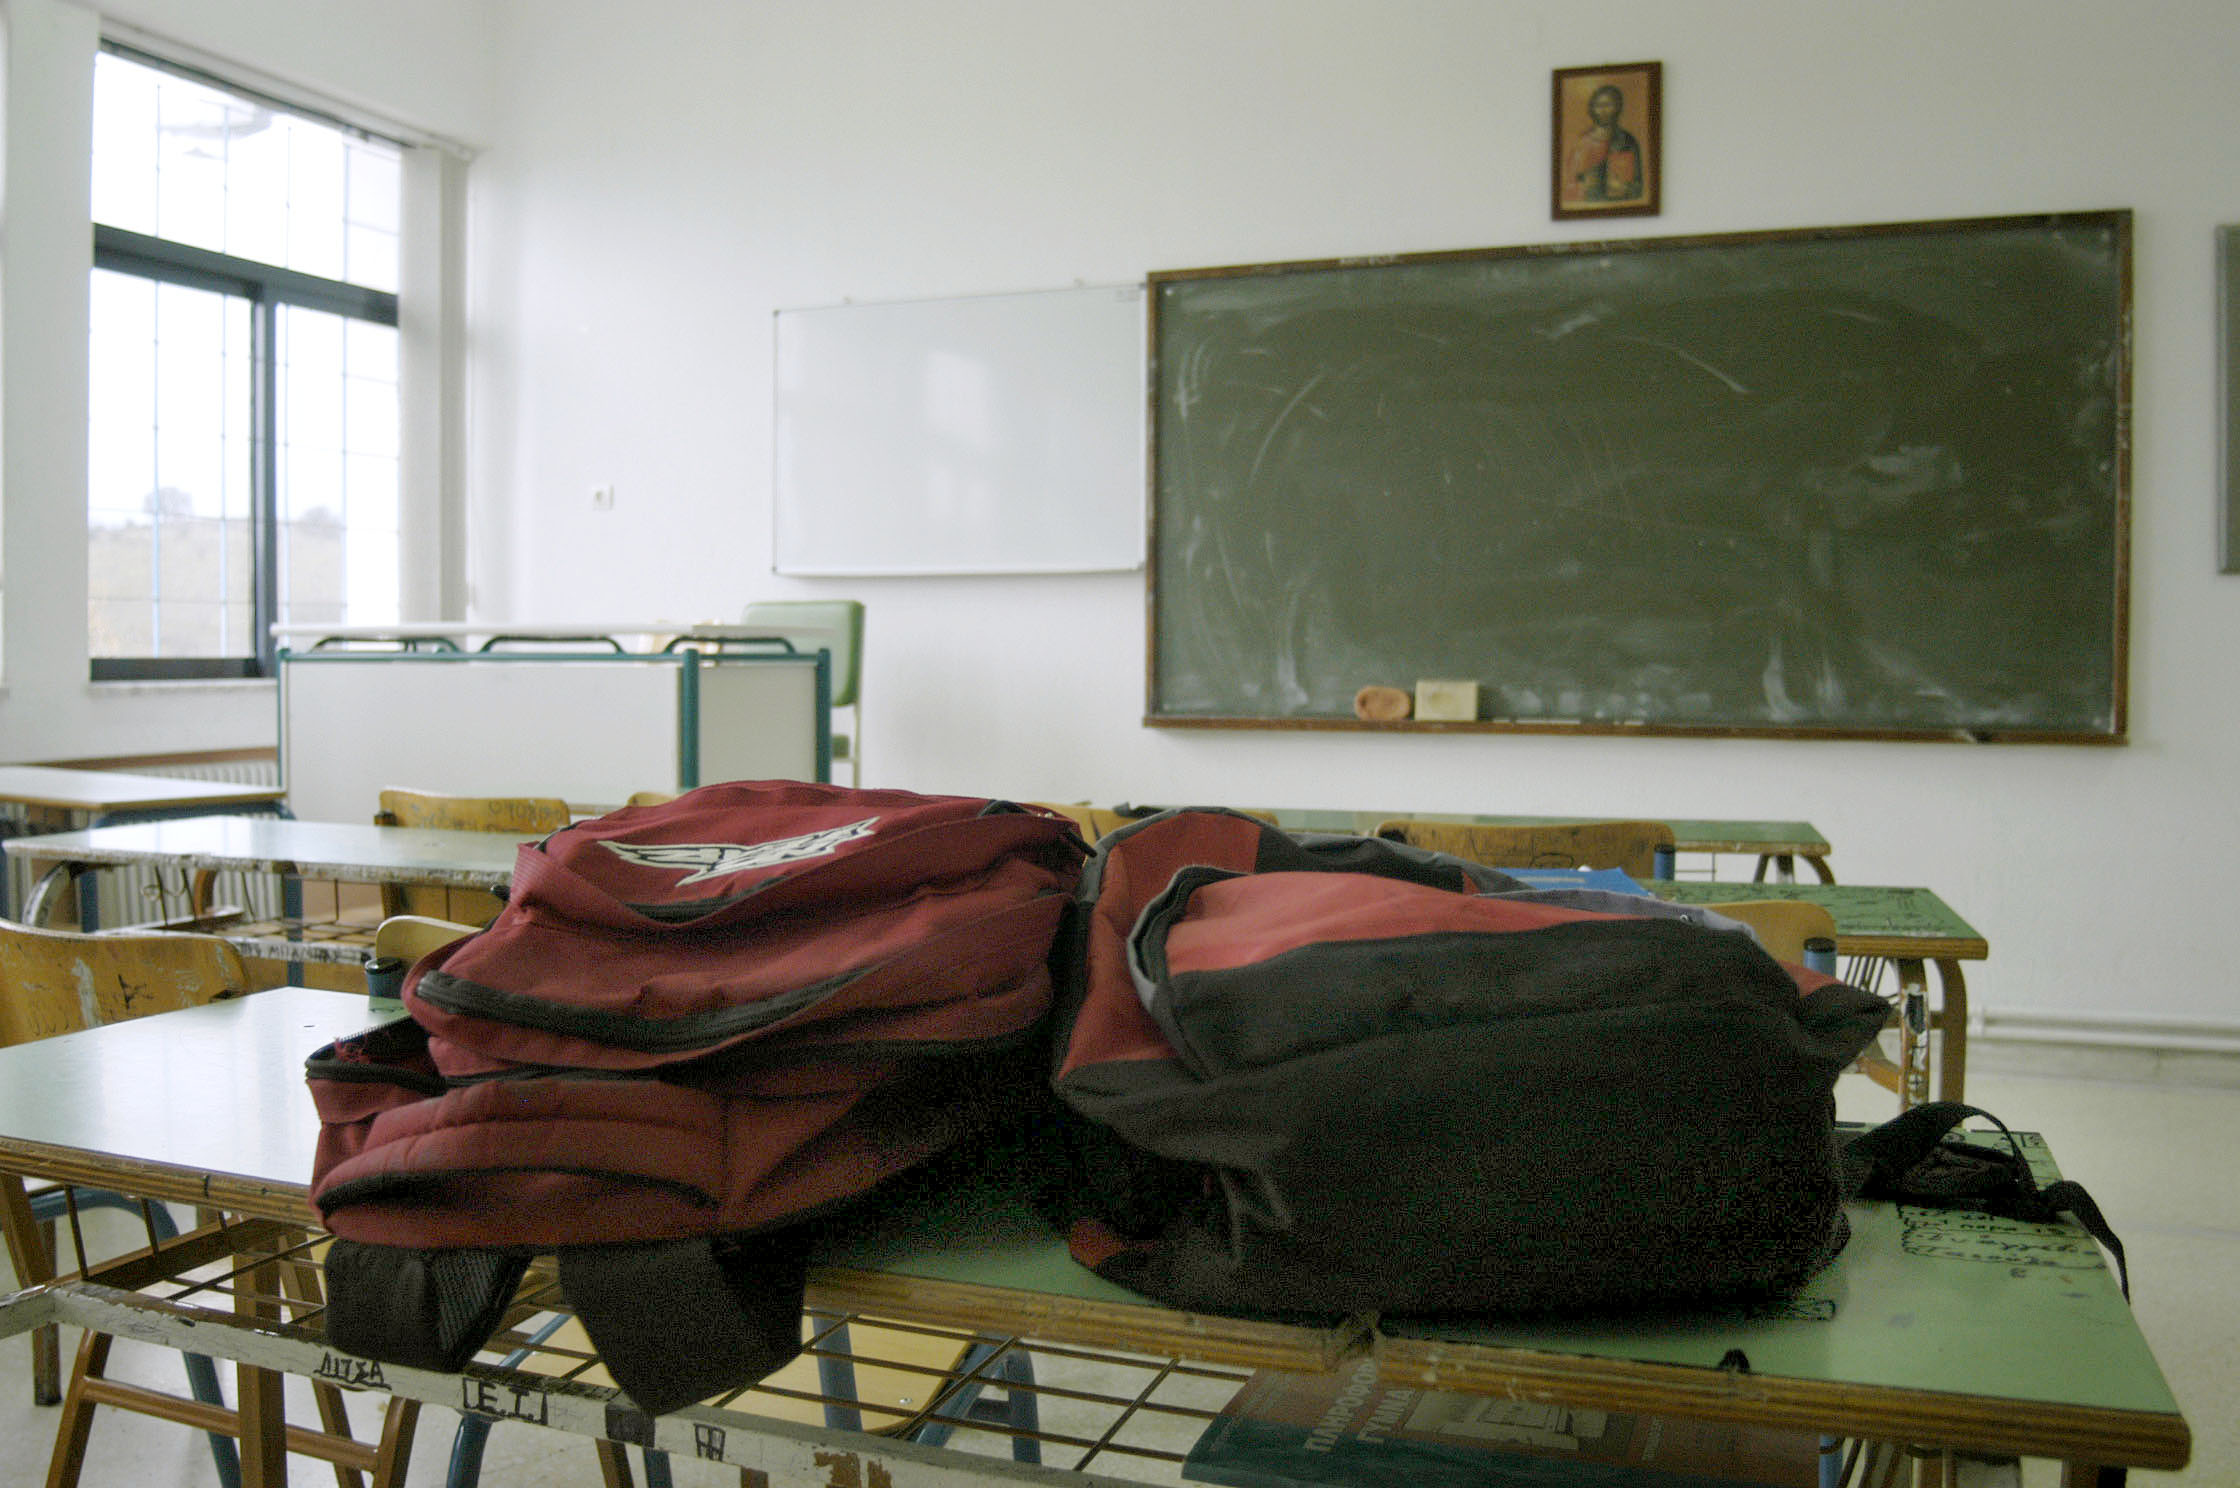 Ηράκλειο: Μαθητές φέρνουν σόμπες από το σπίτι για να ζεσταθούν στο μουσικό σχολείο